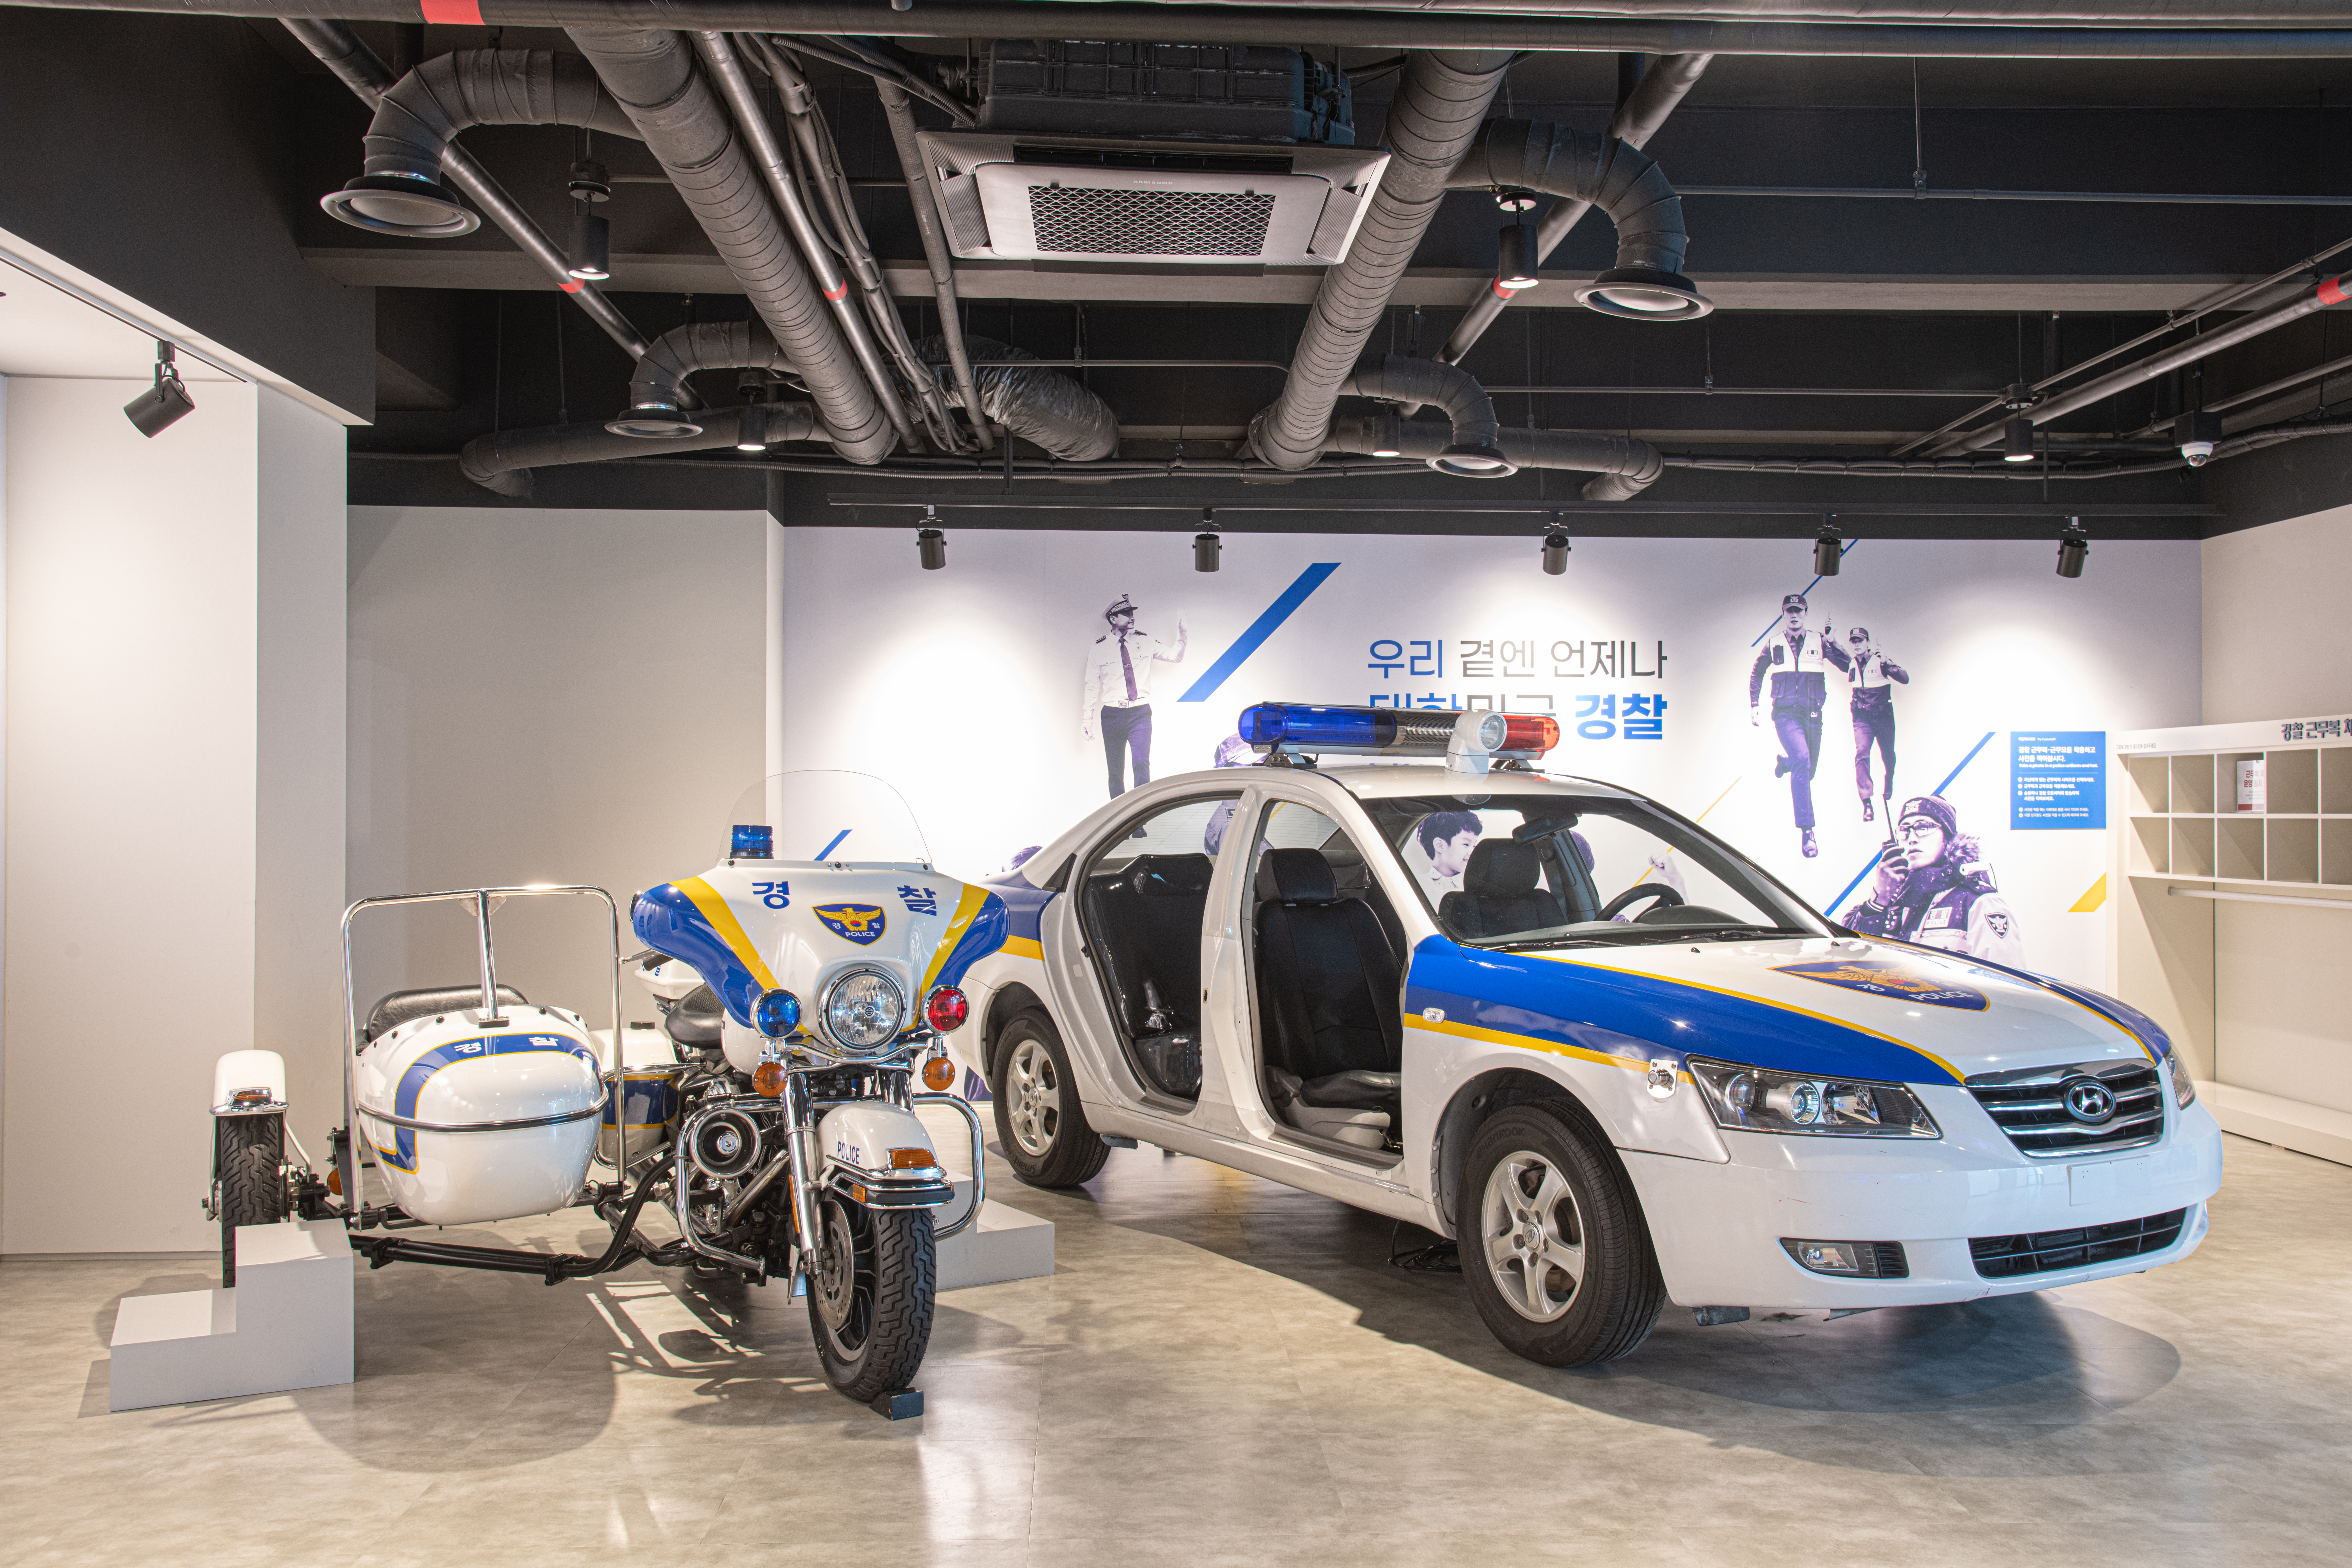 경찰박물관3 : 경찰차와 오토바이가 전시되어 있는 경찰박물관 내부 전경